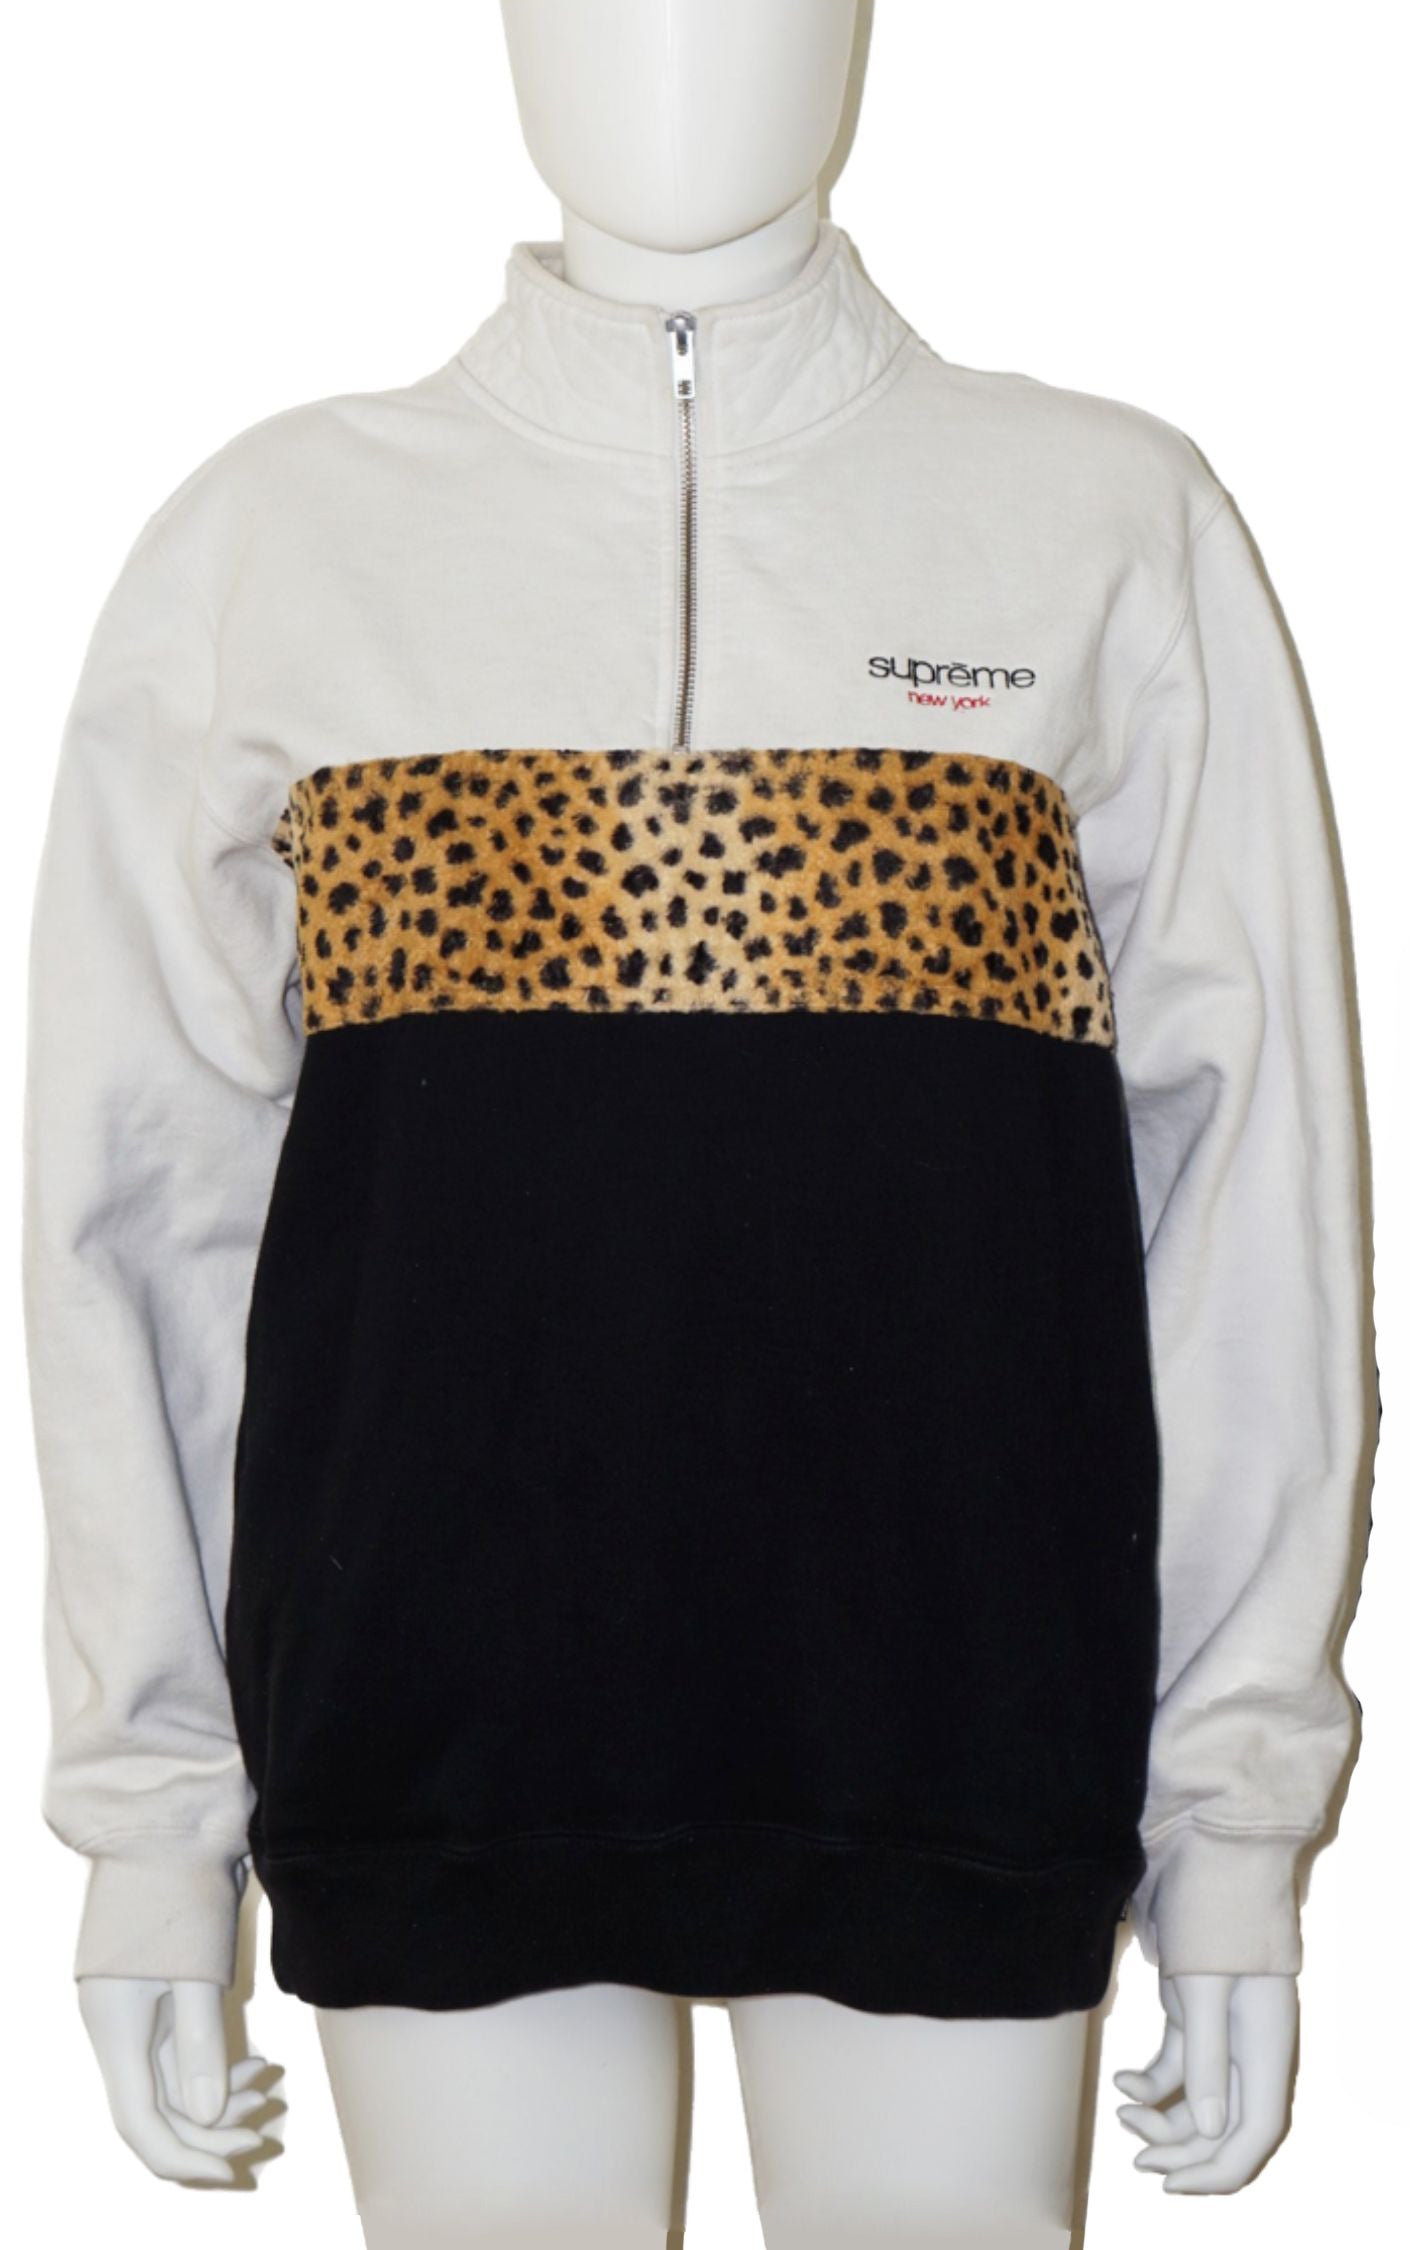 SUPREME New York Leopard Panel Zip Sweatshirt resellum